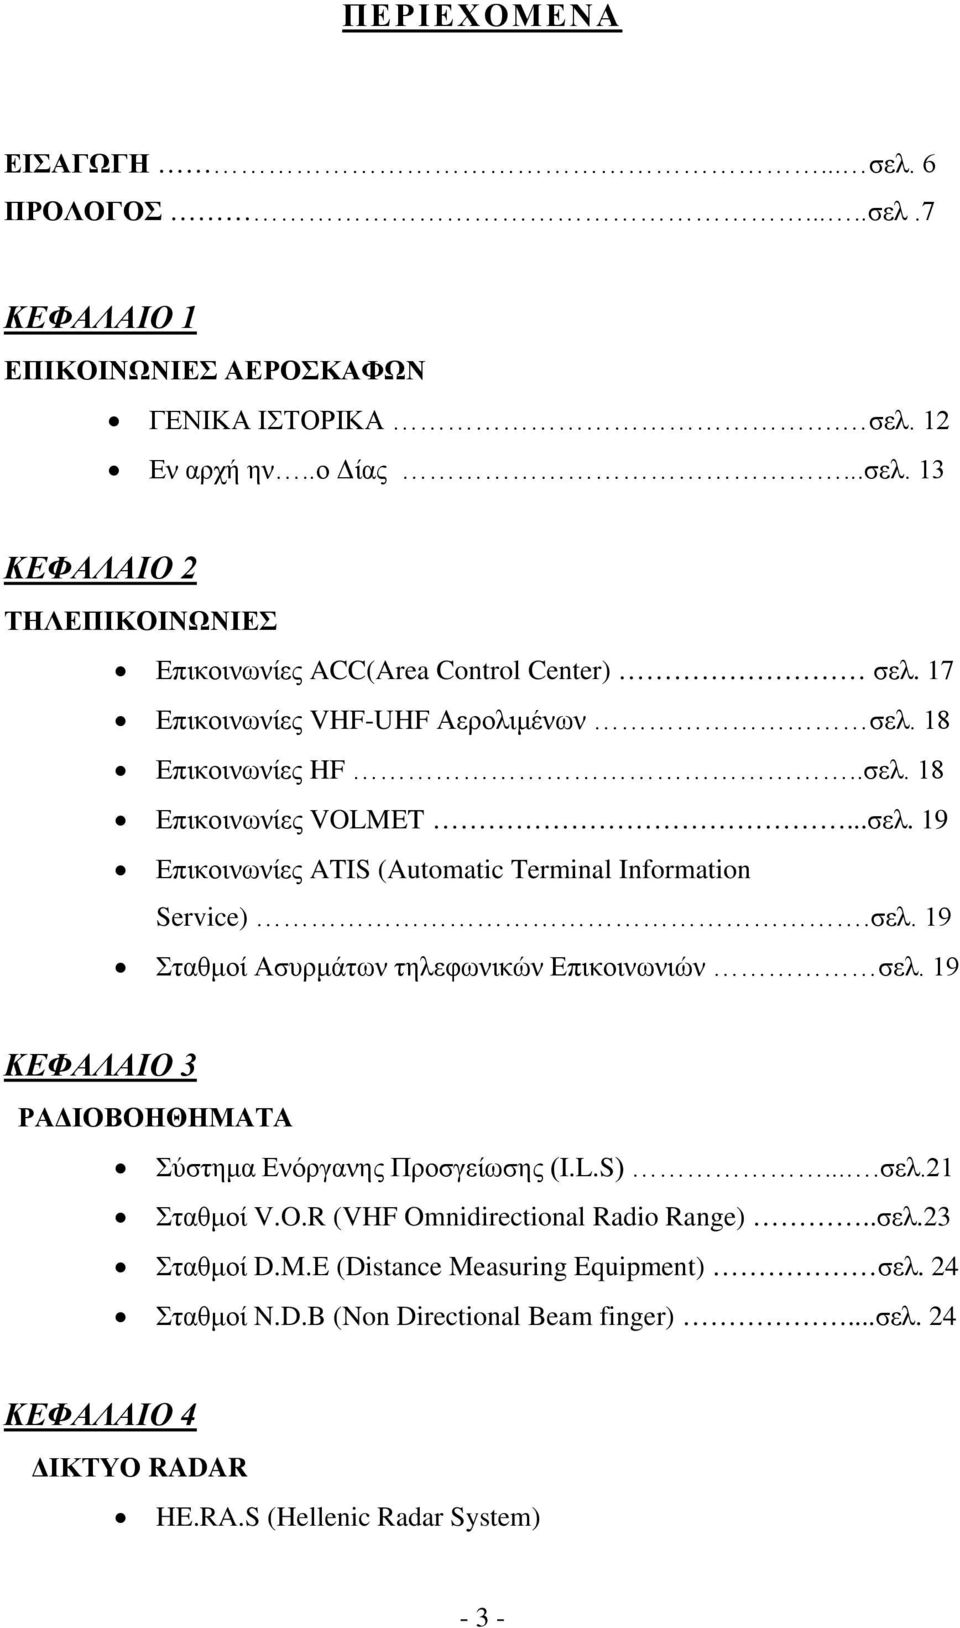 19 ΚΕΦΑΛΑΙΟ 3 ΡΑΔΙΟΒΟΗΘΗΜΑΤΑ Σύστημα Ενόργανης Προσγείωσης (I.L.S)....σελ.21 Σταθμοί V.O.R (VHF Omnidirectional Radio Range)..σελ.23 Σταθμοί D.M.